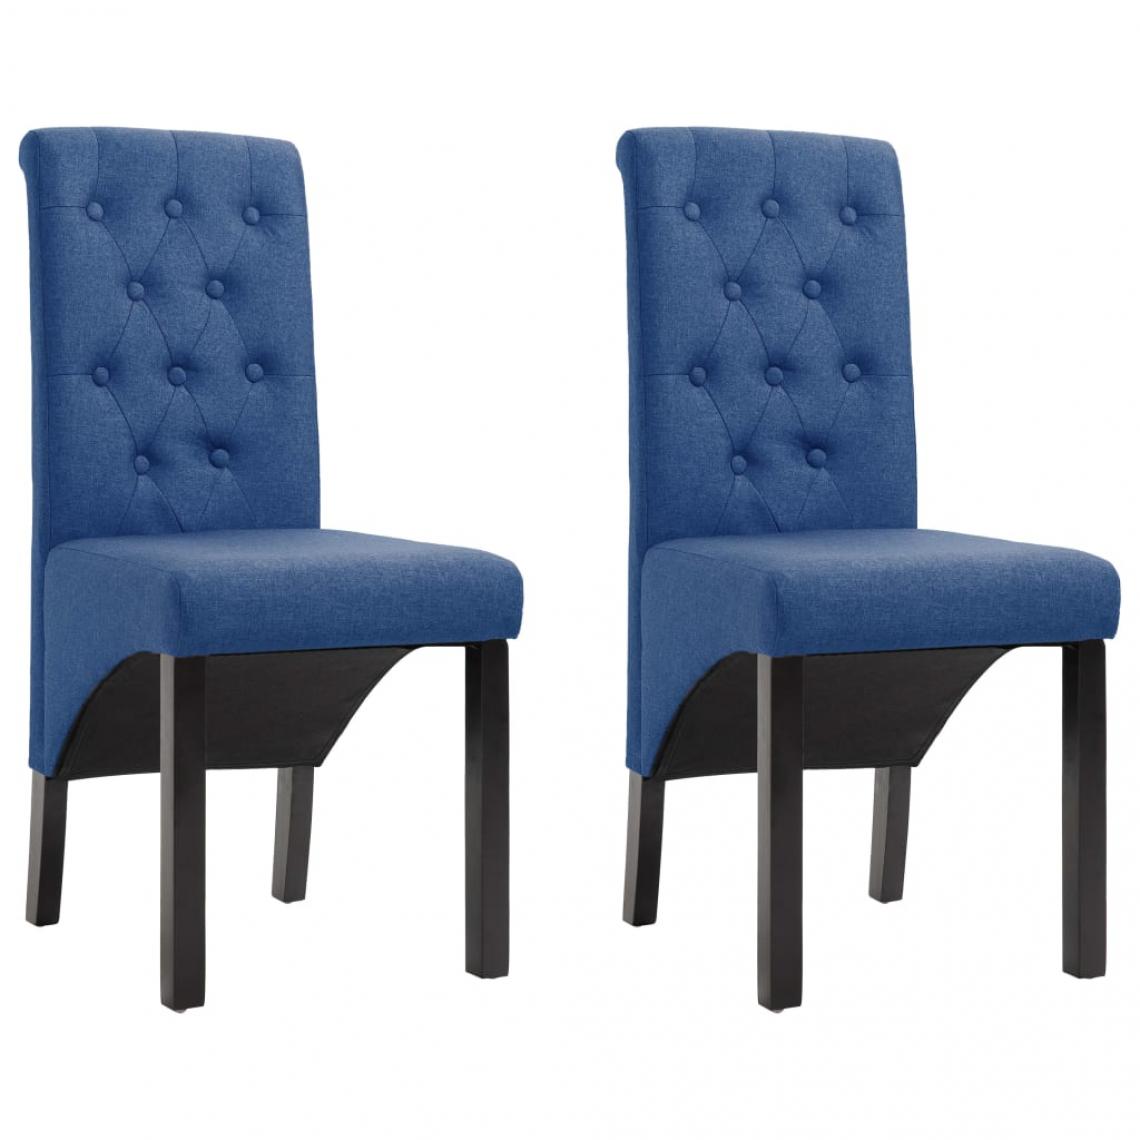 Decoshop26 - Lot de 2 chaises de salle à manger cuisine design moderne tissu bleu CDS020237 - Chaises